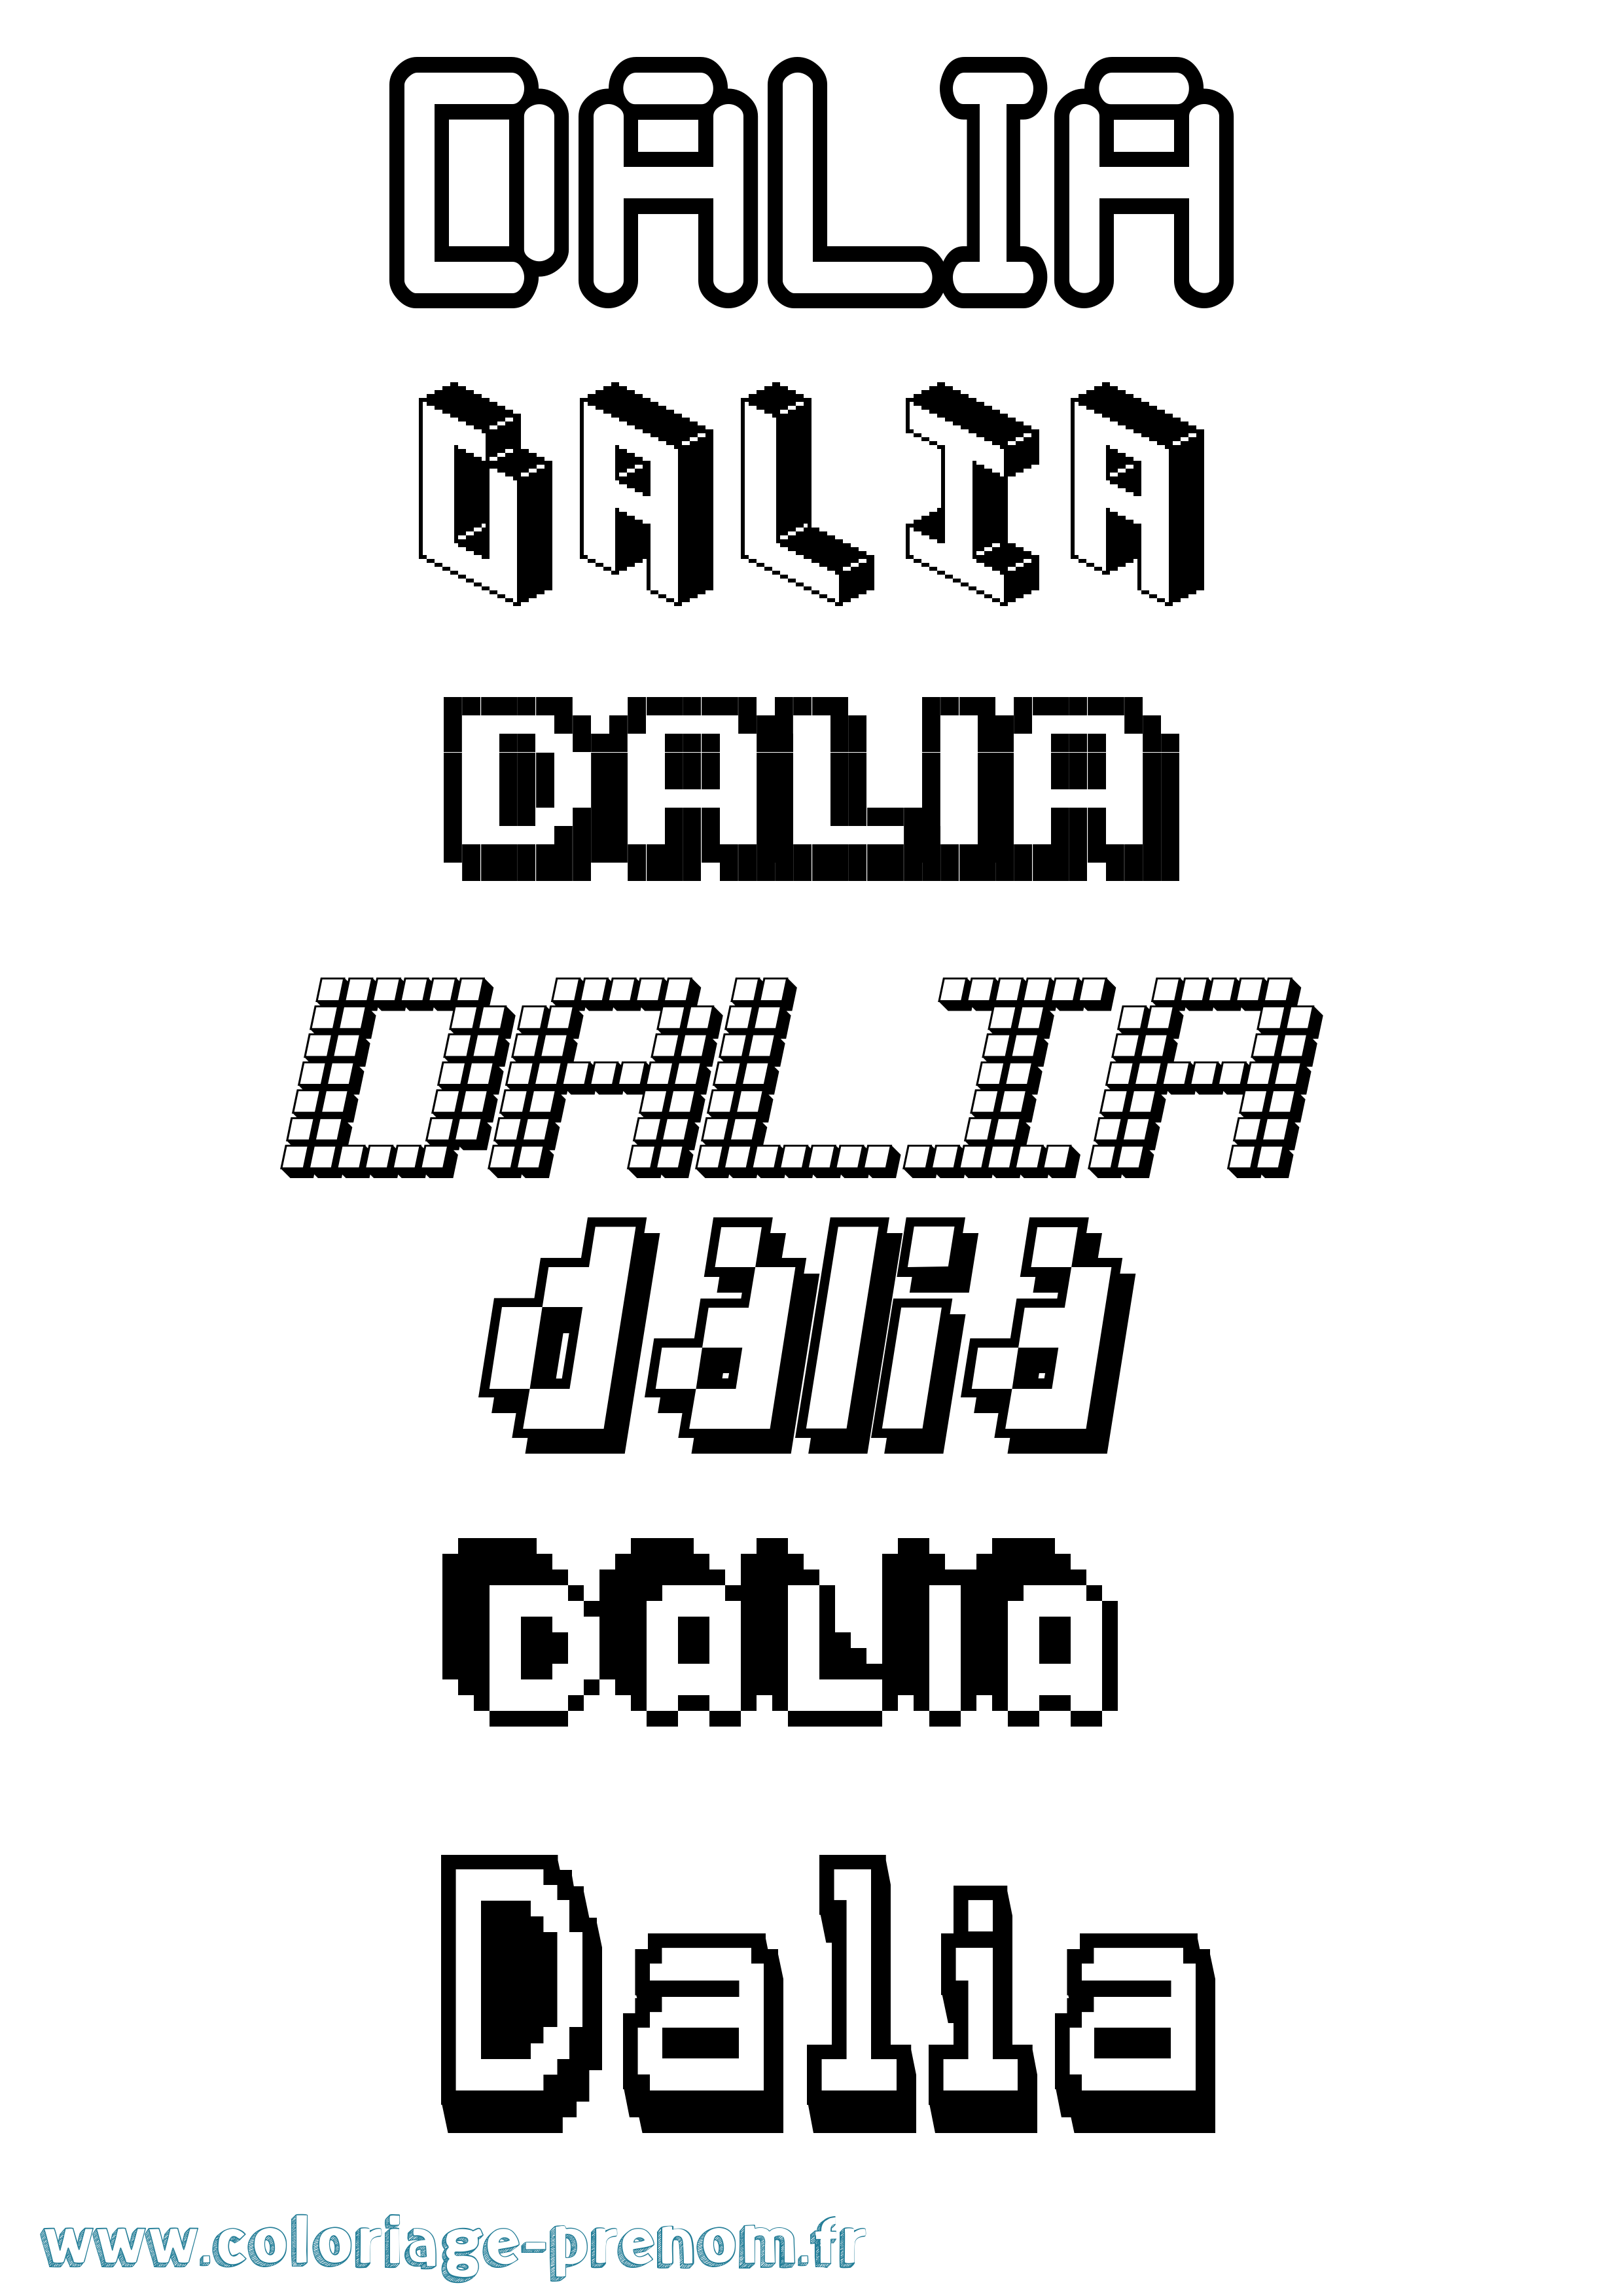 Coloriage prénom Dalia